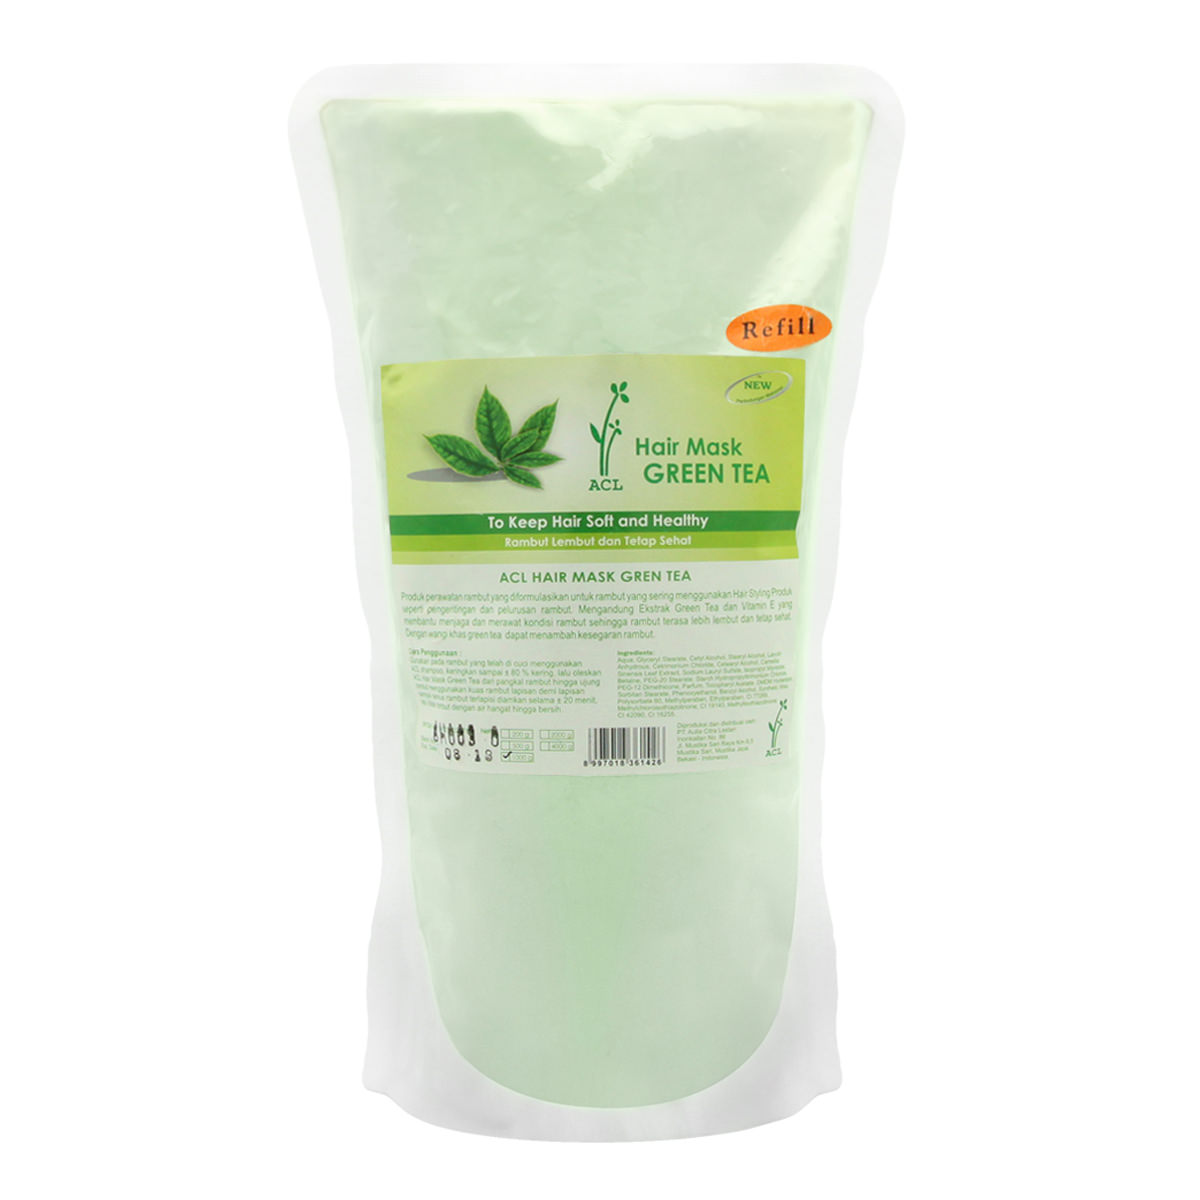 ACL-Hair-Mask-Green-Tea-Refill-(1000-g)-edited-sfw(2)